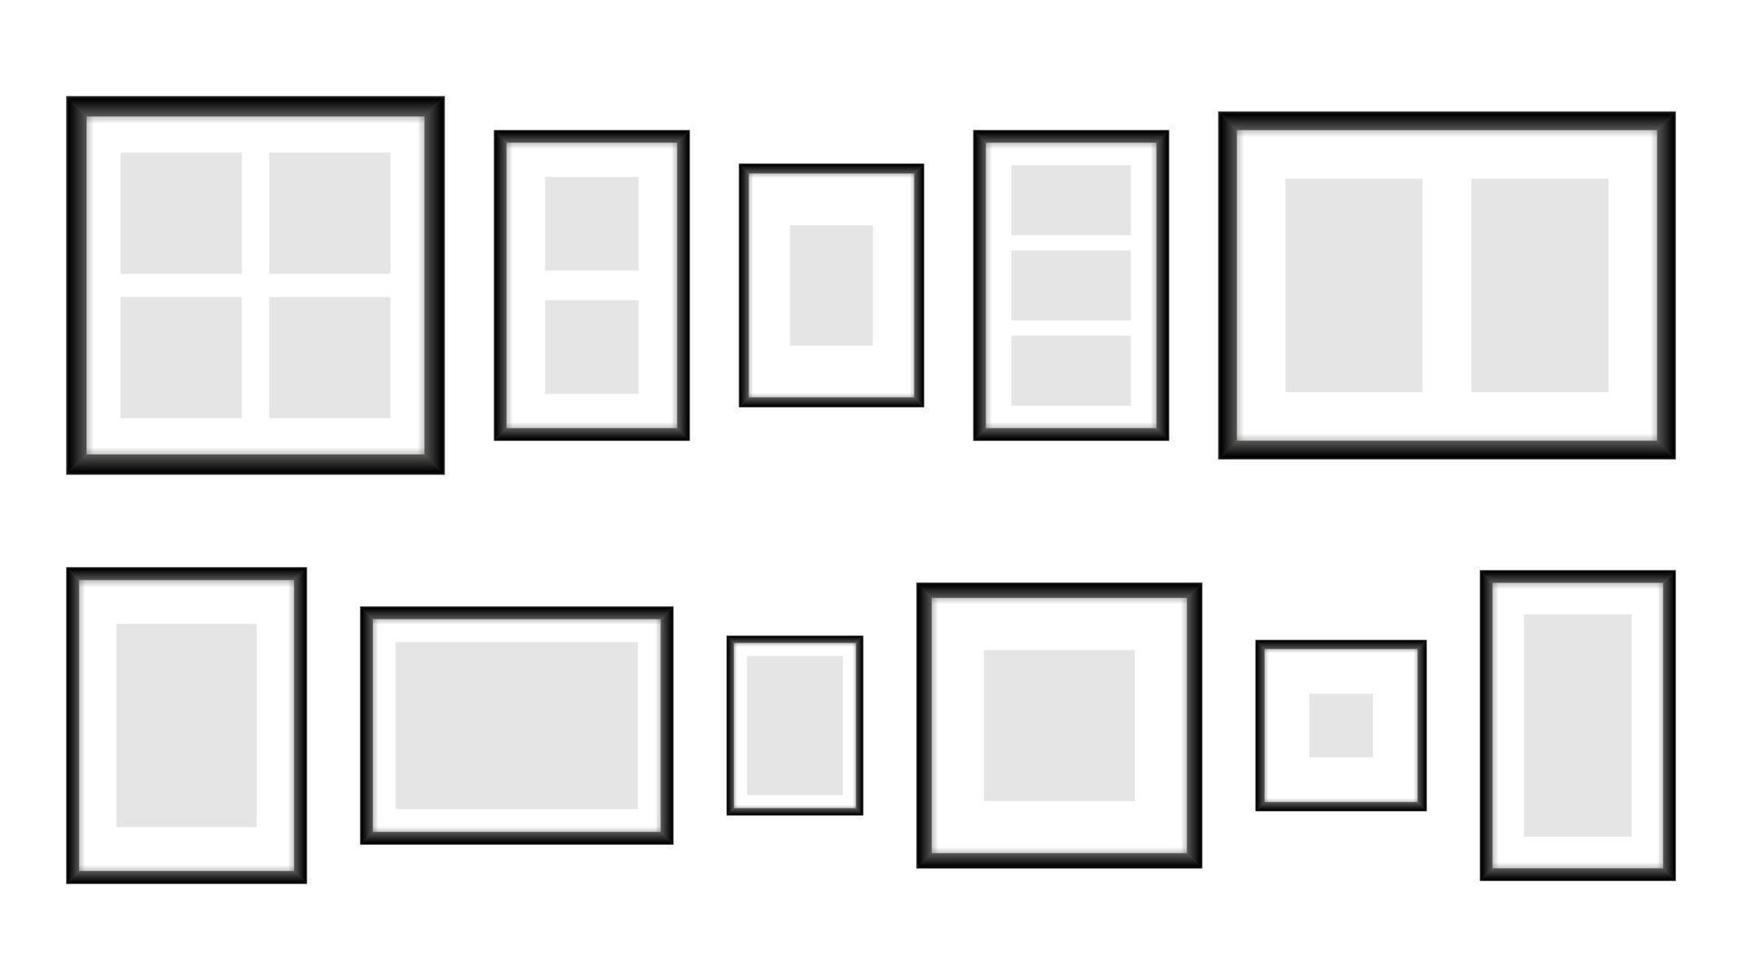 cadres photo noirs dans un modèle de différentes tailles. bannière verticale rectangulaire vierge avec centre gris vide. conception réaliste pour l'image et l'image vectorielle promotionnelle vecteur